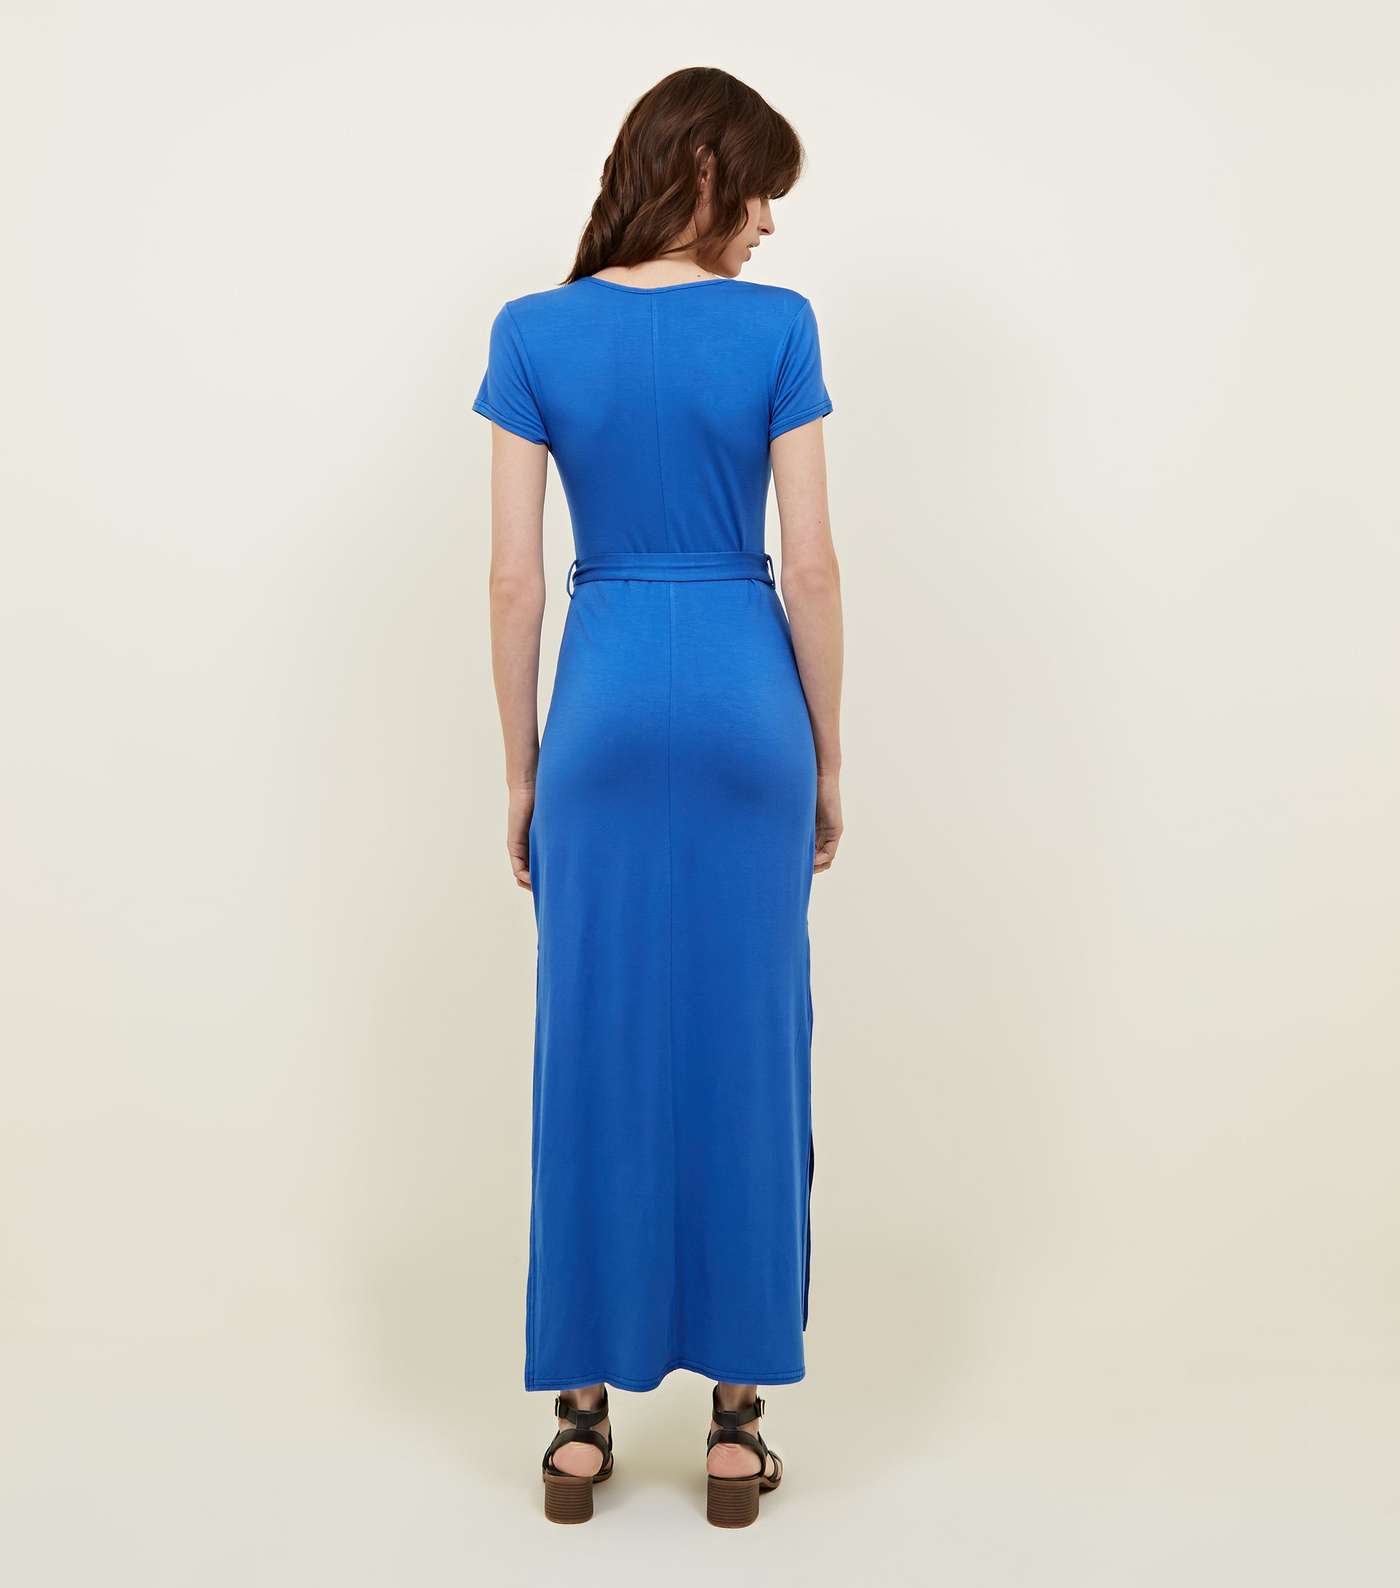 Blue V-Neck Jersey Maxi Dress Image 2